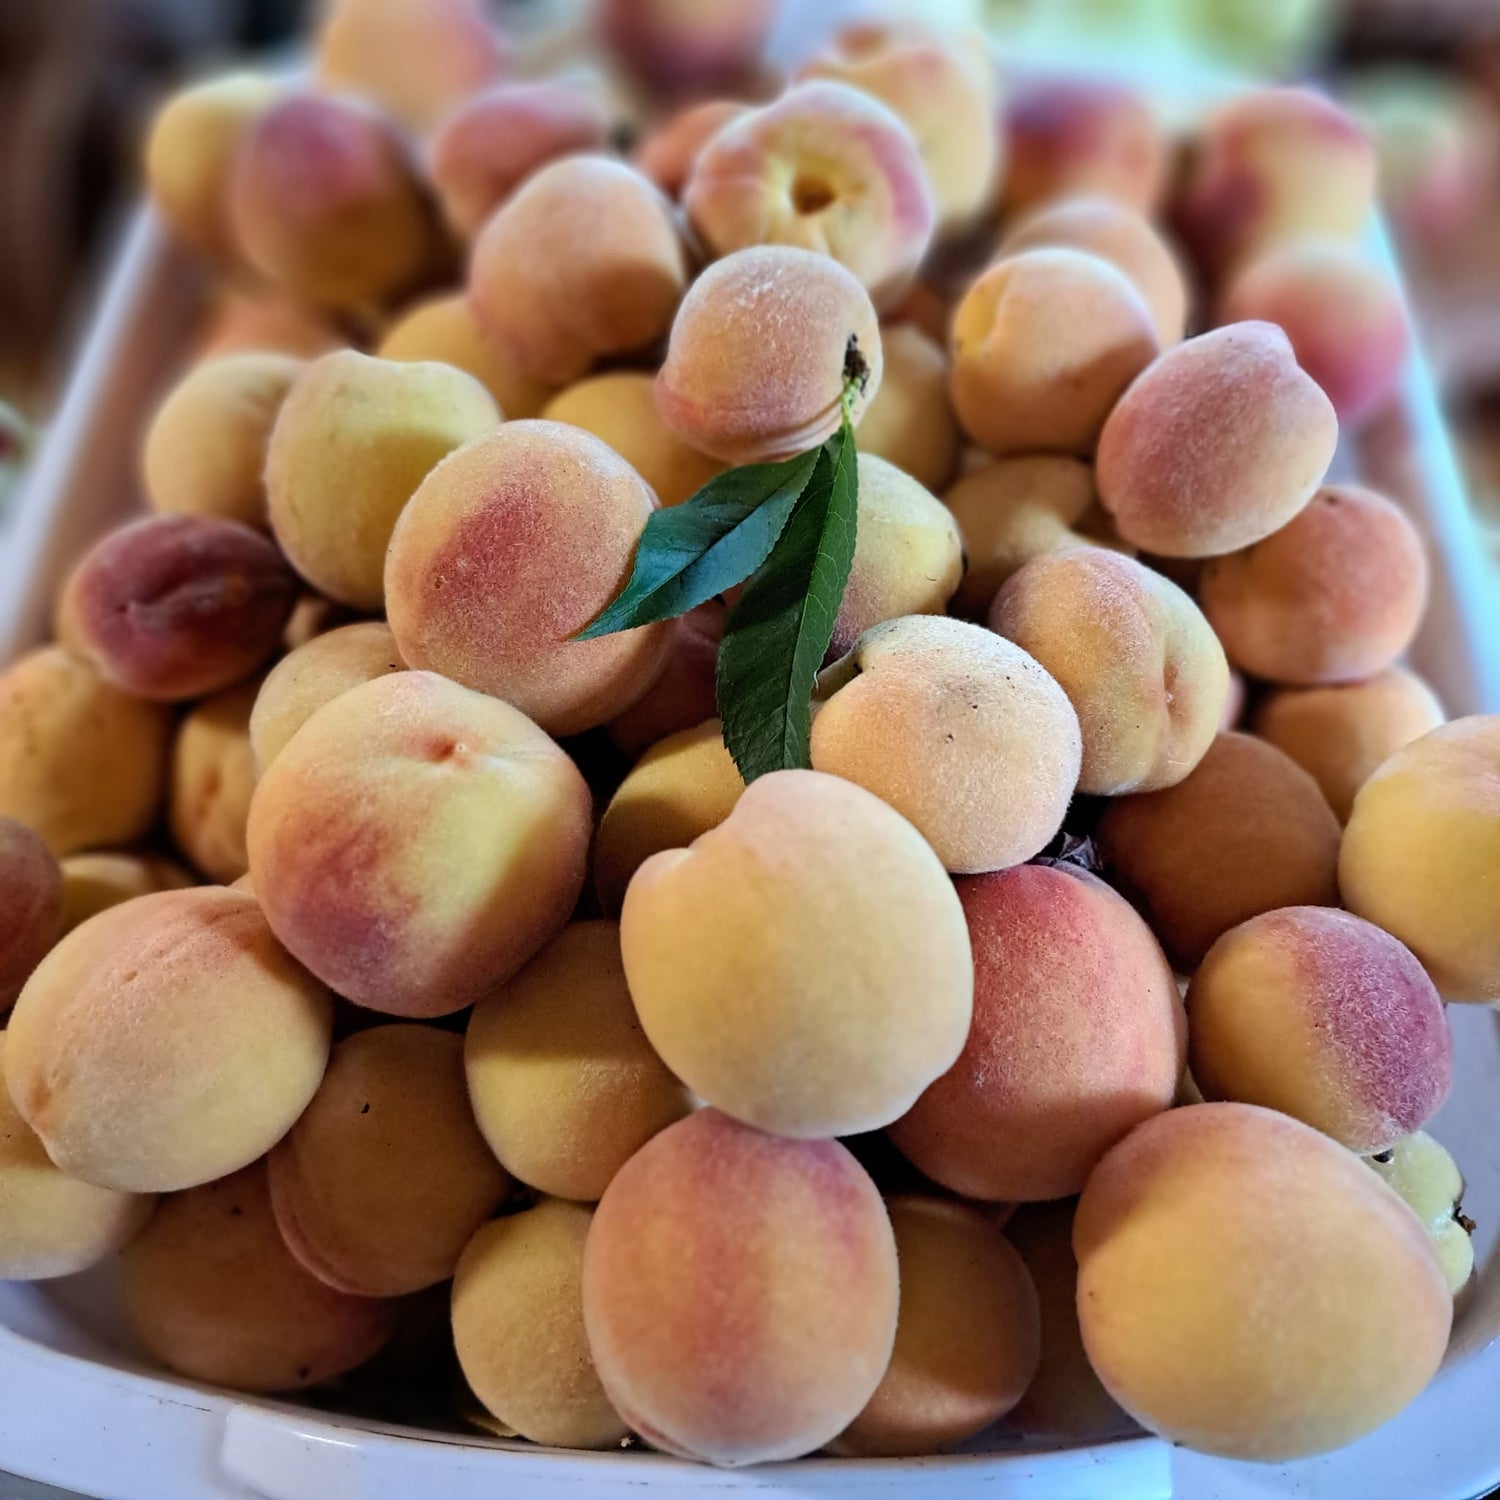 Peaches from a local Guelph peach variety, the Aitkin peach.